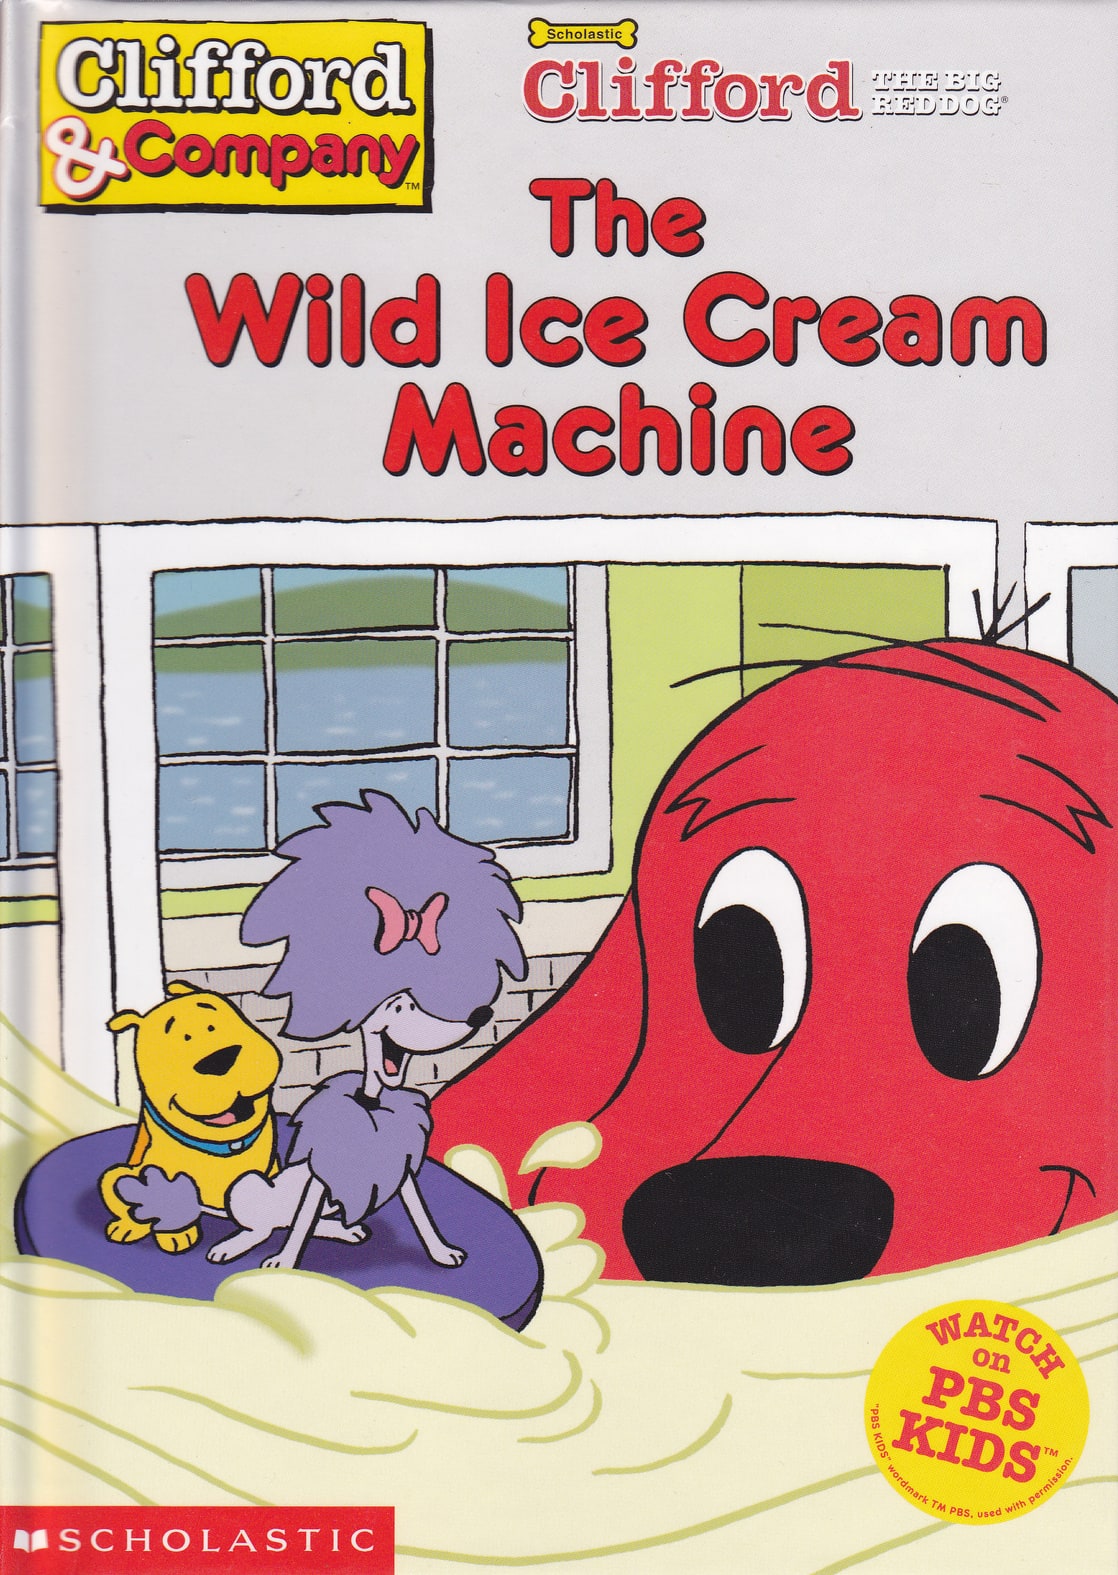 The Wild Ice Cream Machine